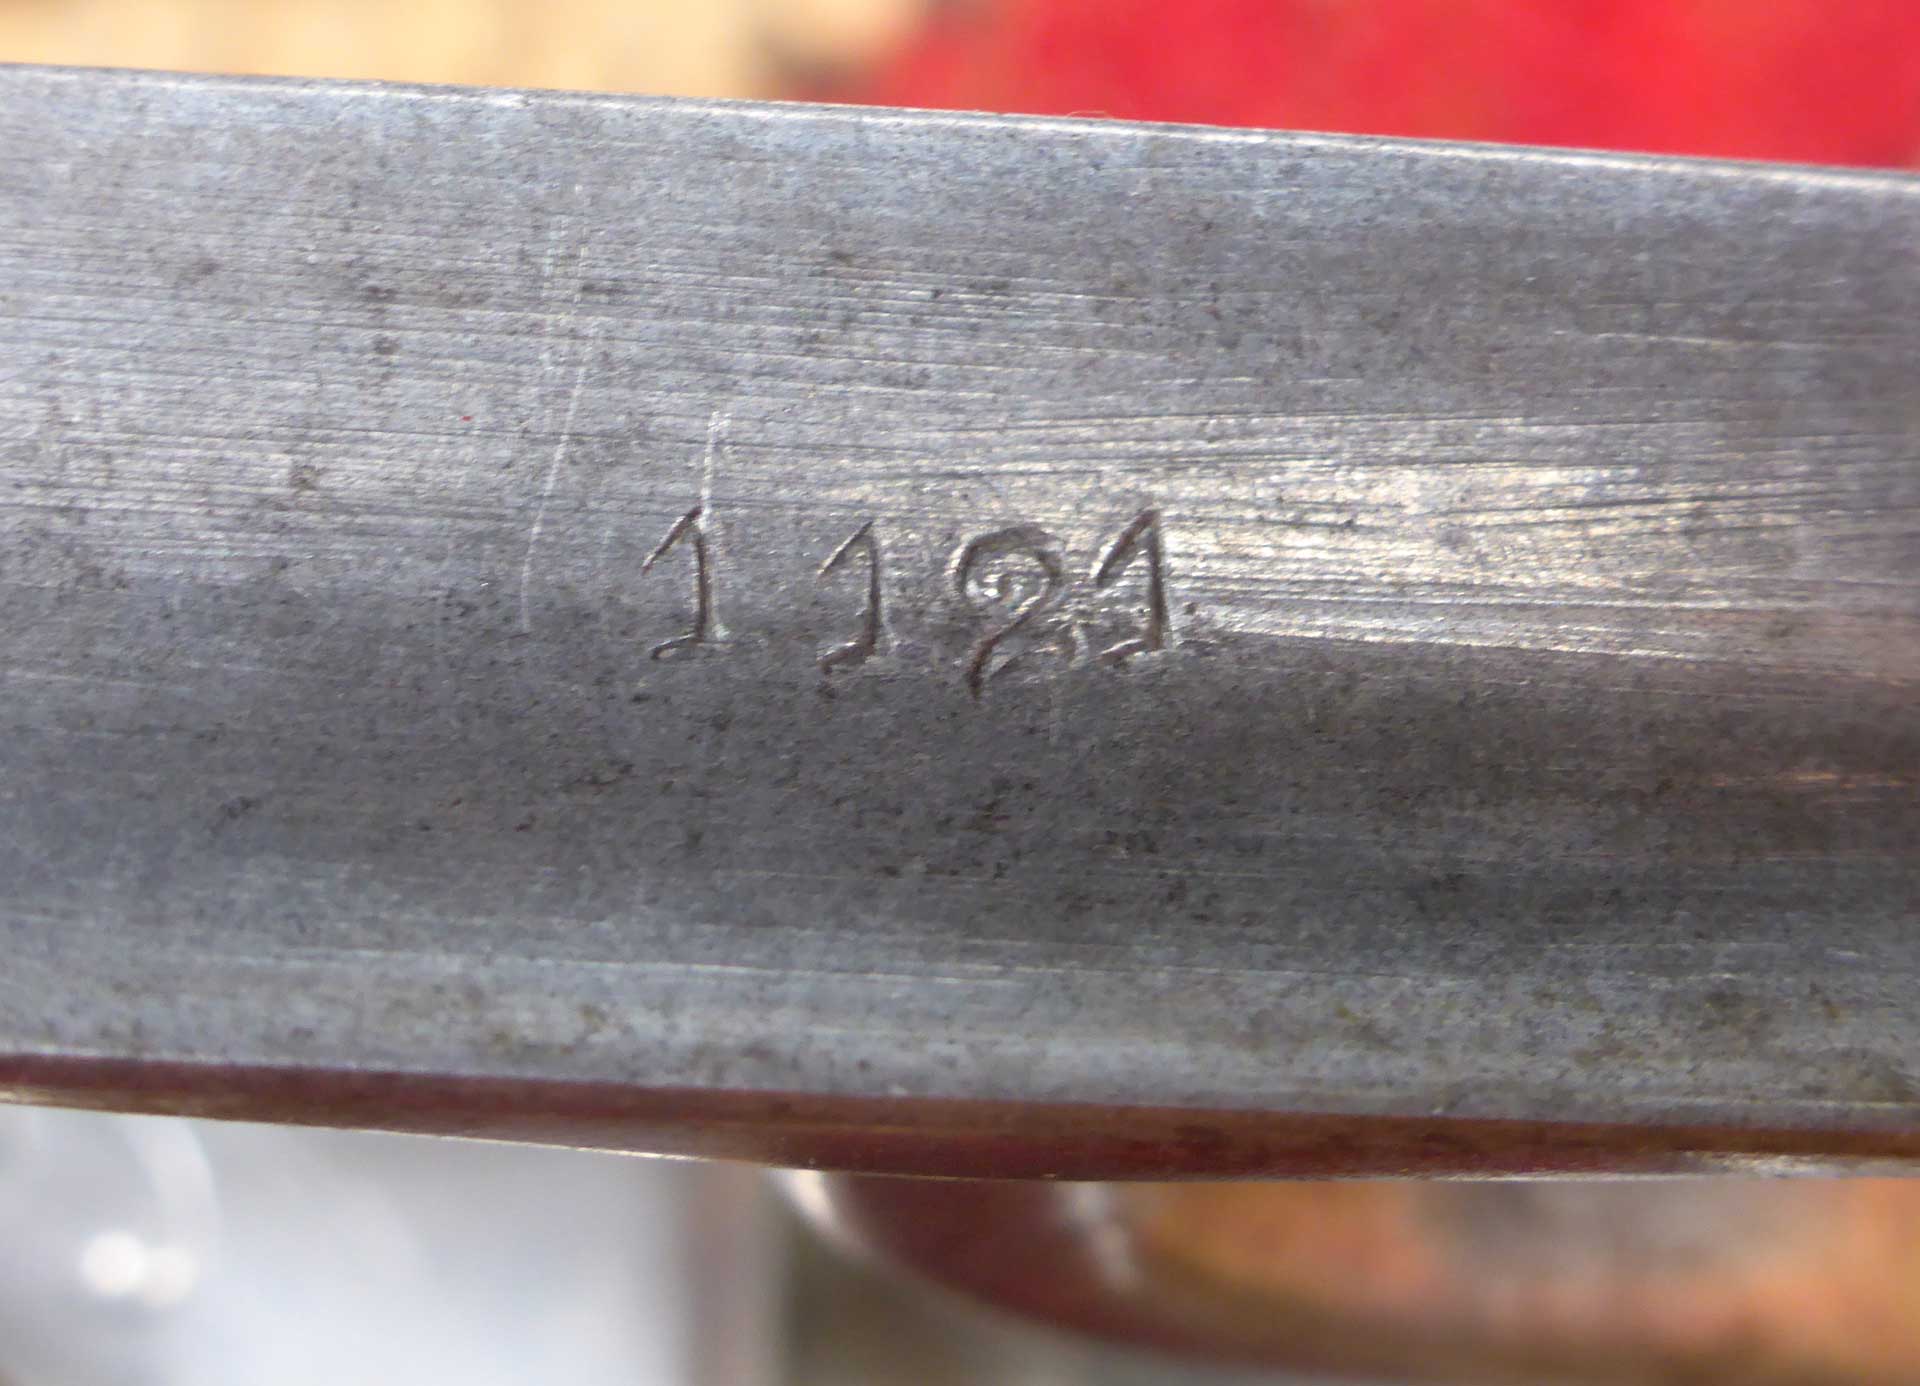 Die Nr. 1121 hat dann schon den gerägten Schriftzug "Triplex A" und den hellen Holzknauf.